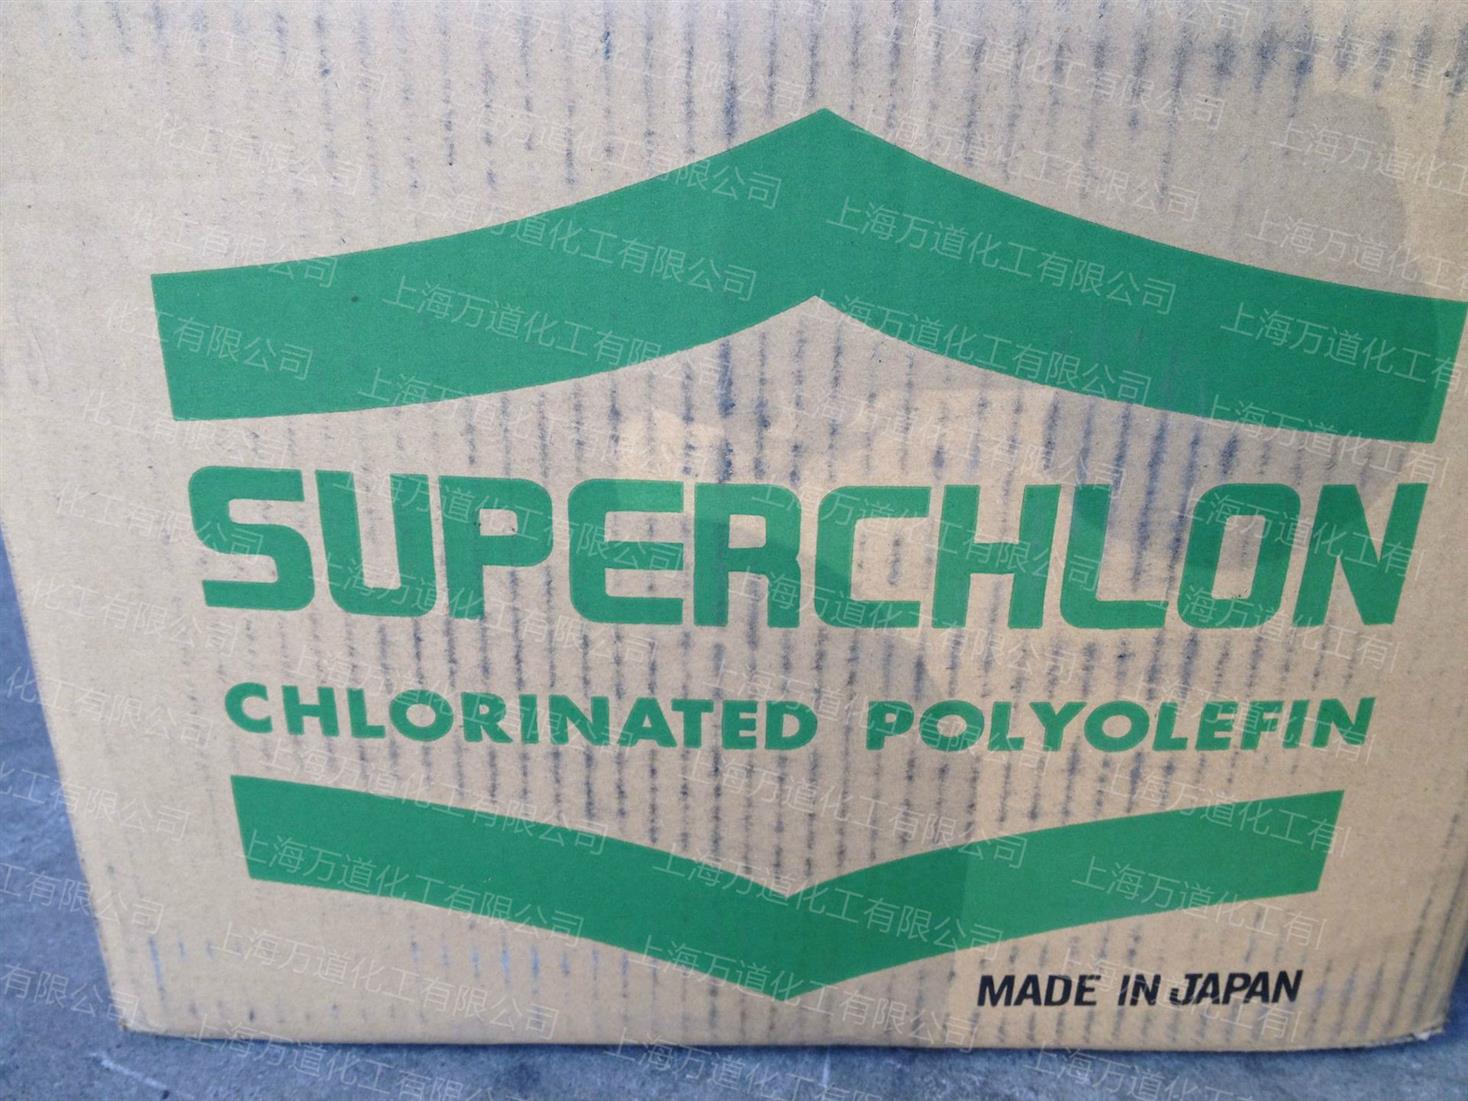 进口制纸氯化聚丙烯SUPERCHLON 814HS 日本制纸